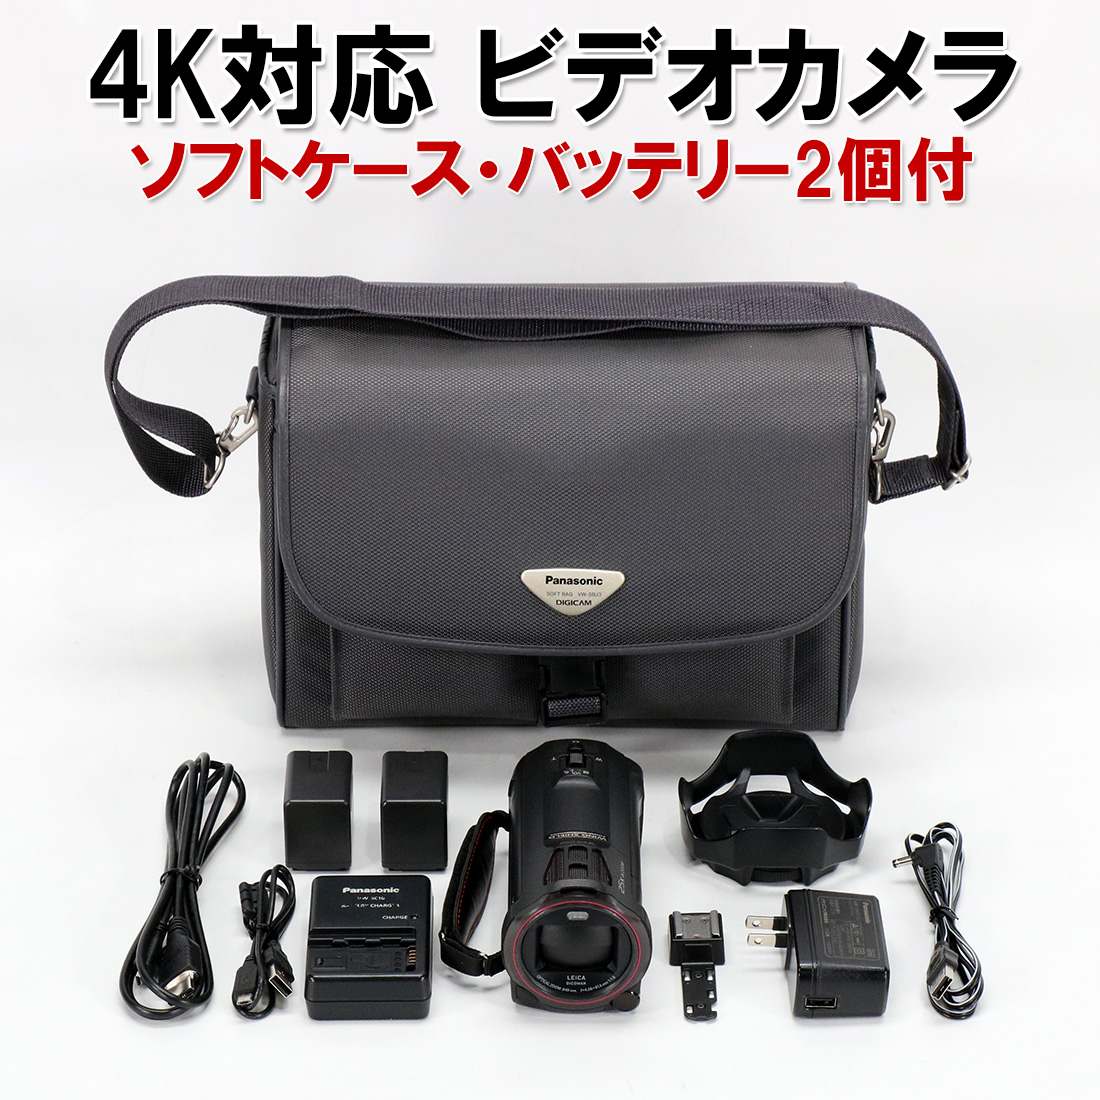 高評価格安 Panasonic デジタル4Kビデオカメラ WX990M 64GB ワイプ撮り